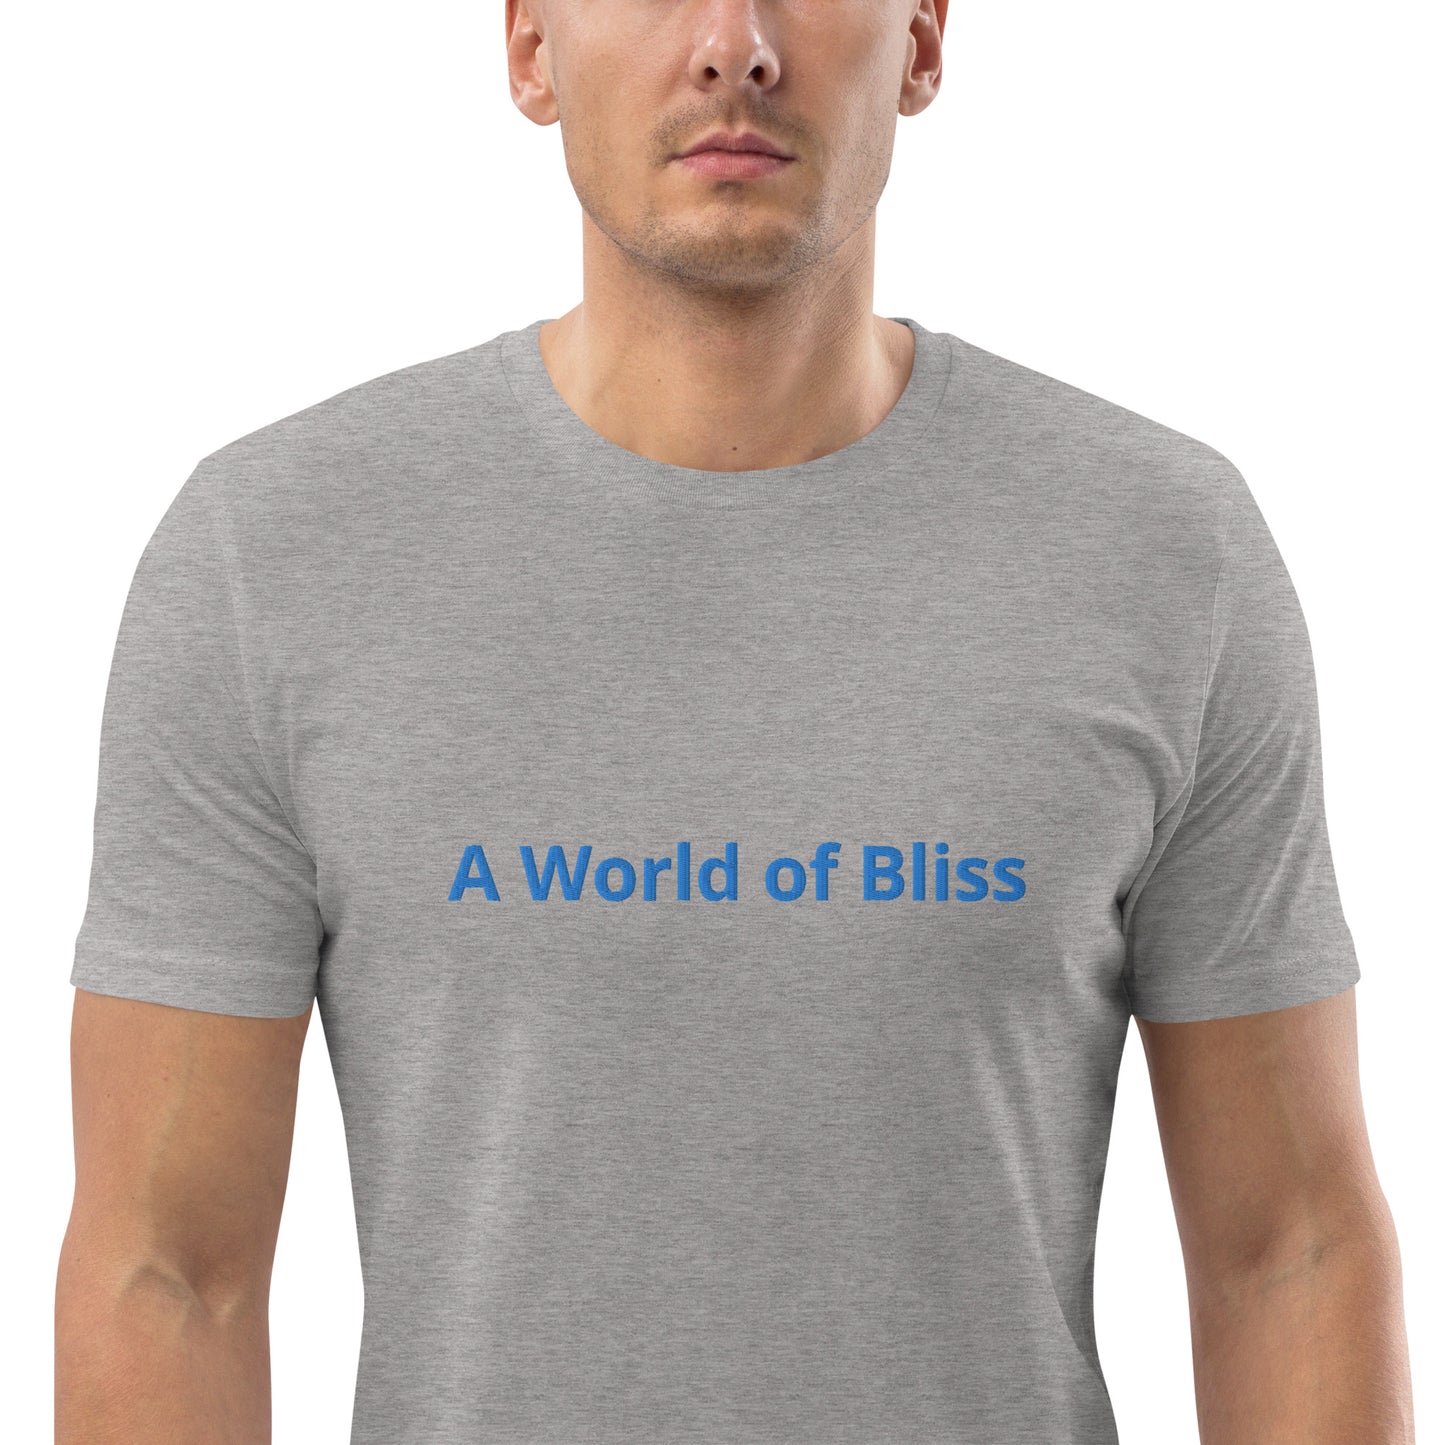 A World of Bliss T-shirt